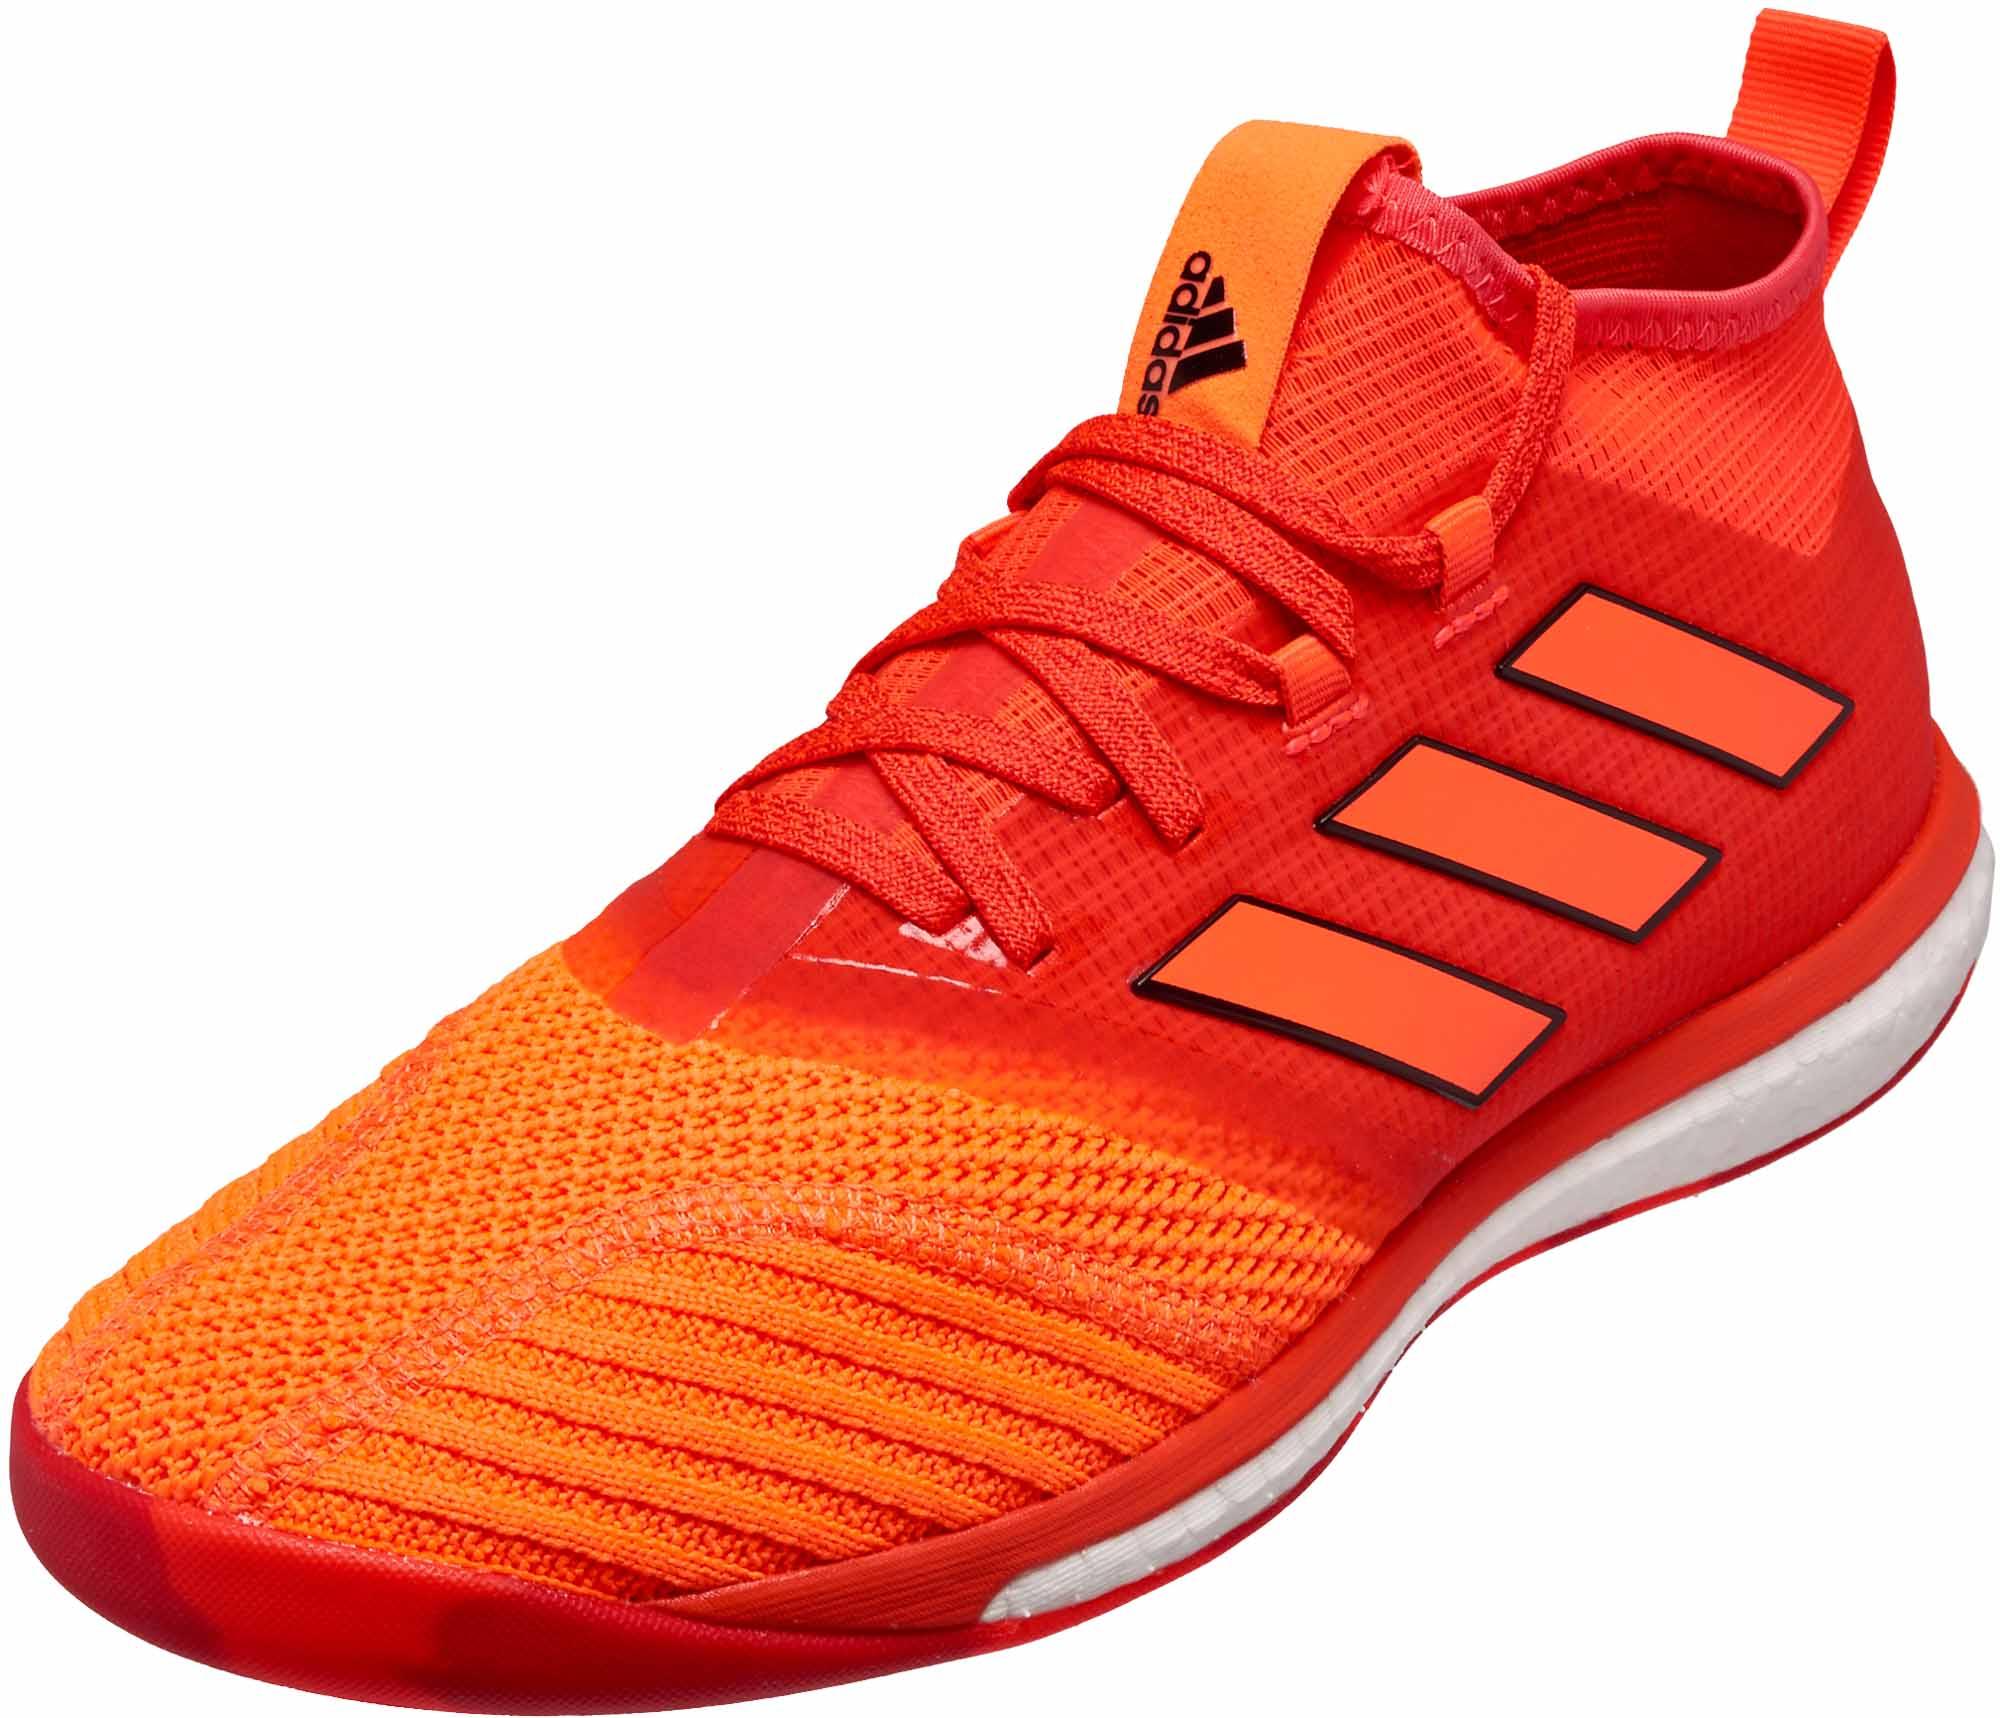 adidas ACE Tango 17.1 Trainer - Red & Orange